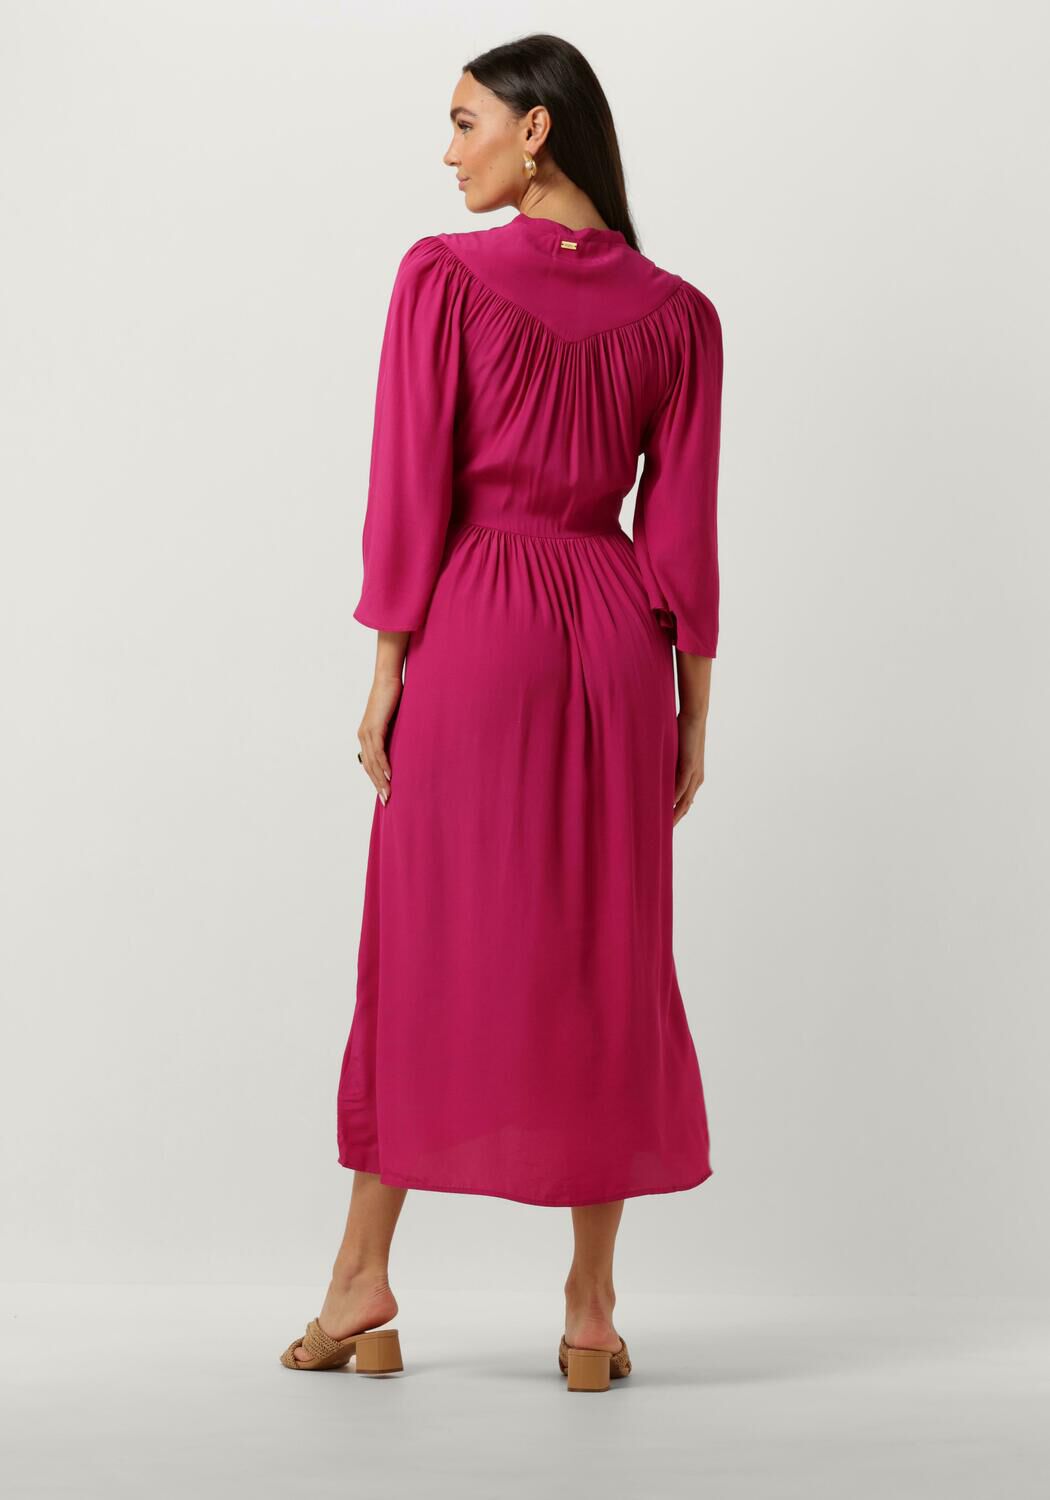 POM AMSTERDAM Dames Jurken Imperial Fuchsia Dress Roze